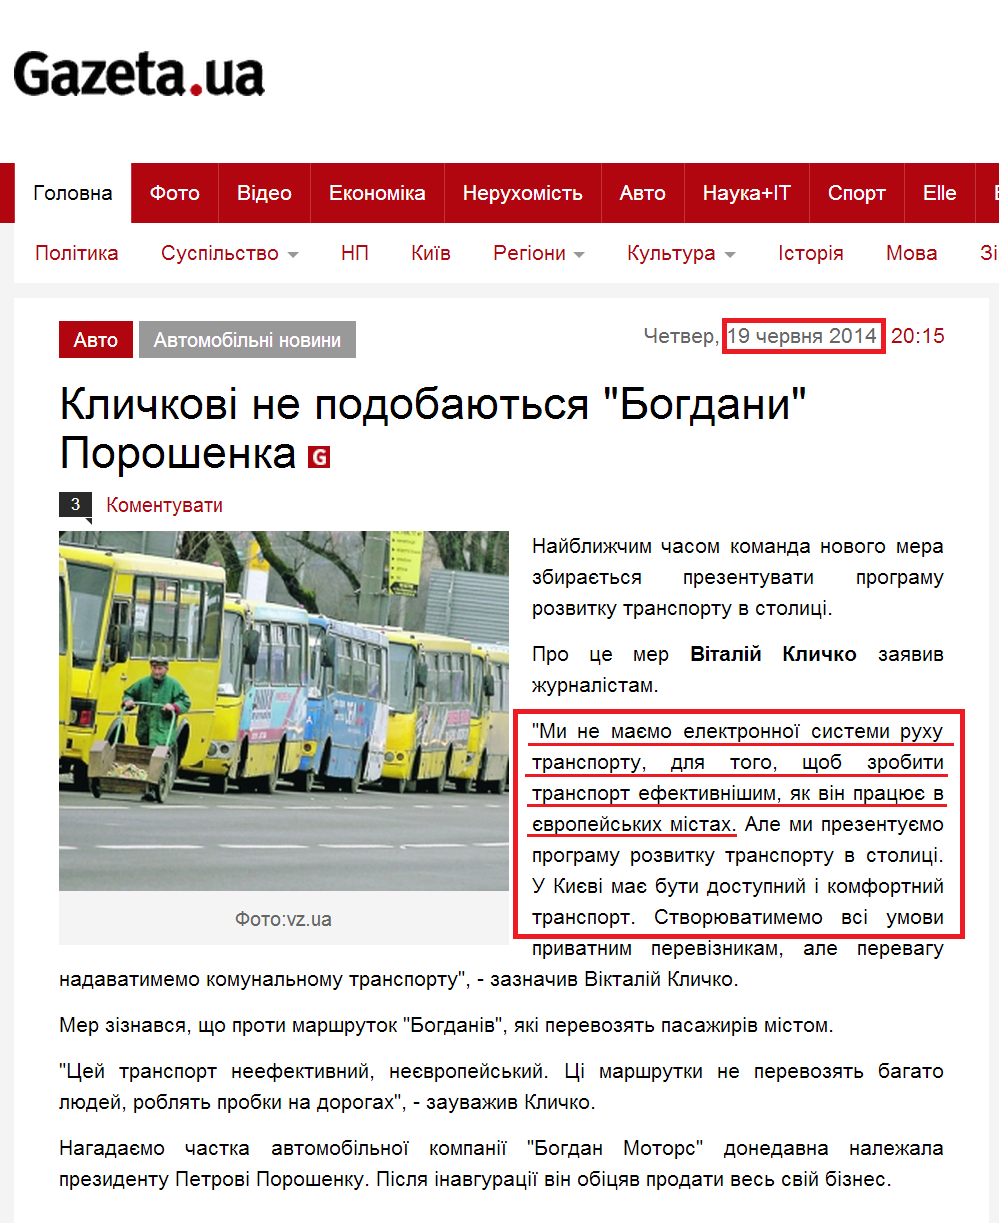 http://gazeta.ua/articles/avto/_klichkovi-ne-podobayutsya-bogdani-poroshenka/565085